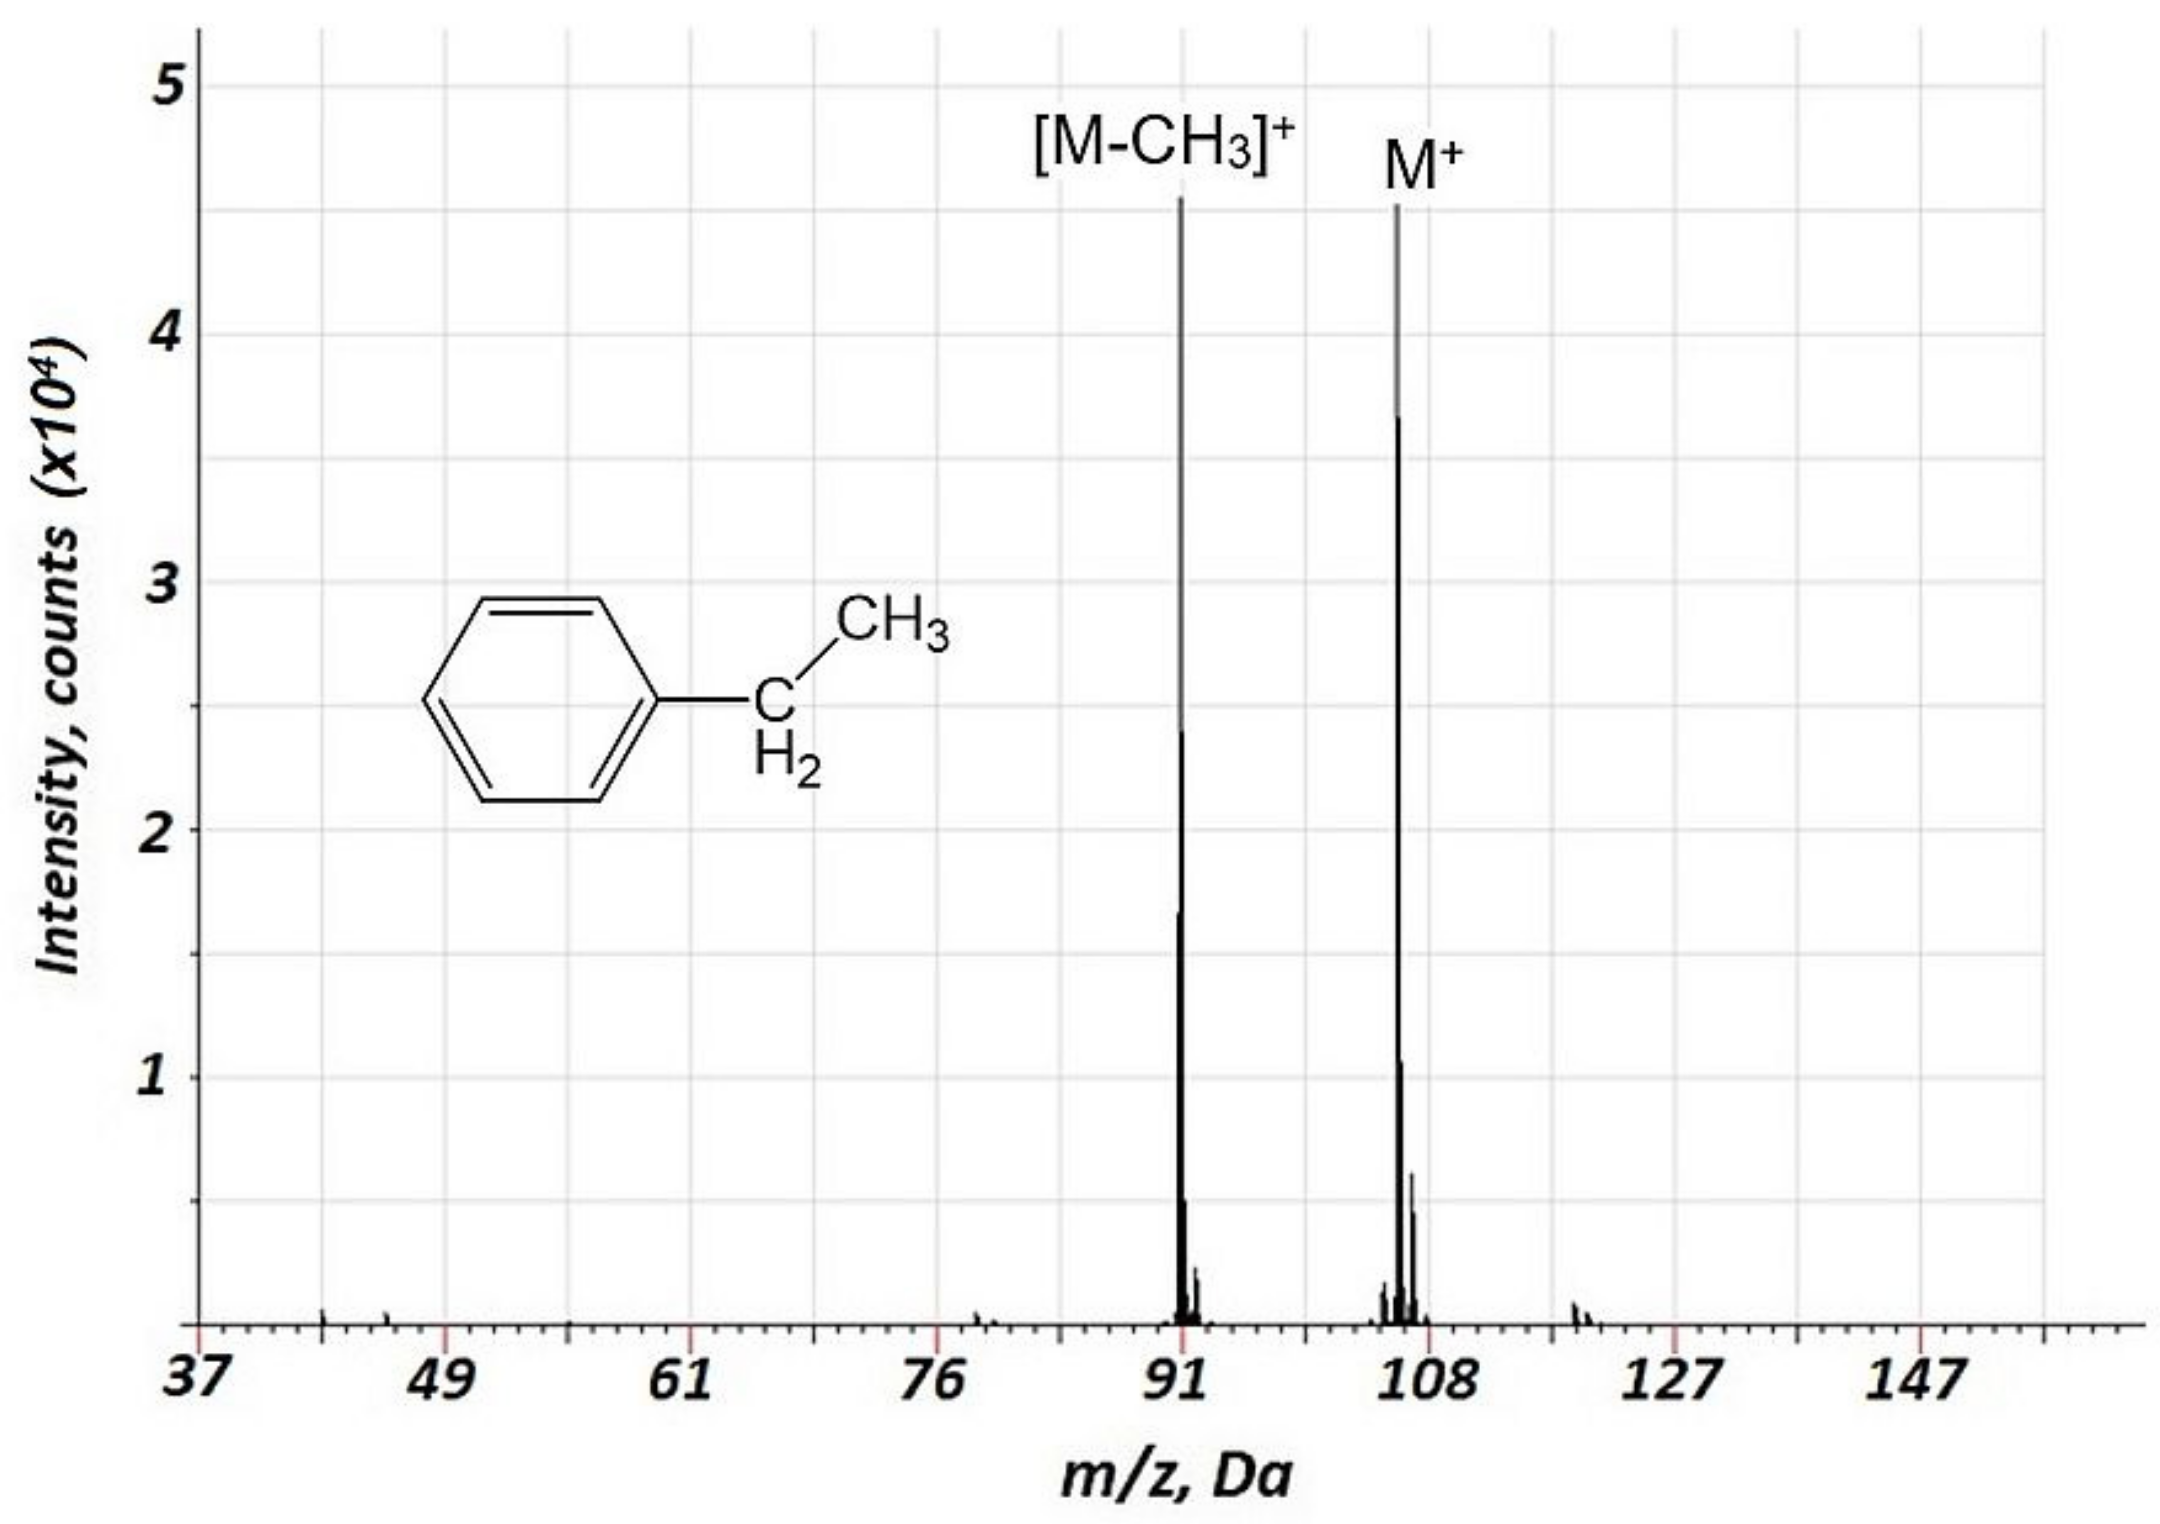 ethylbenzene mass spectrum